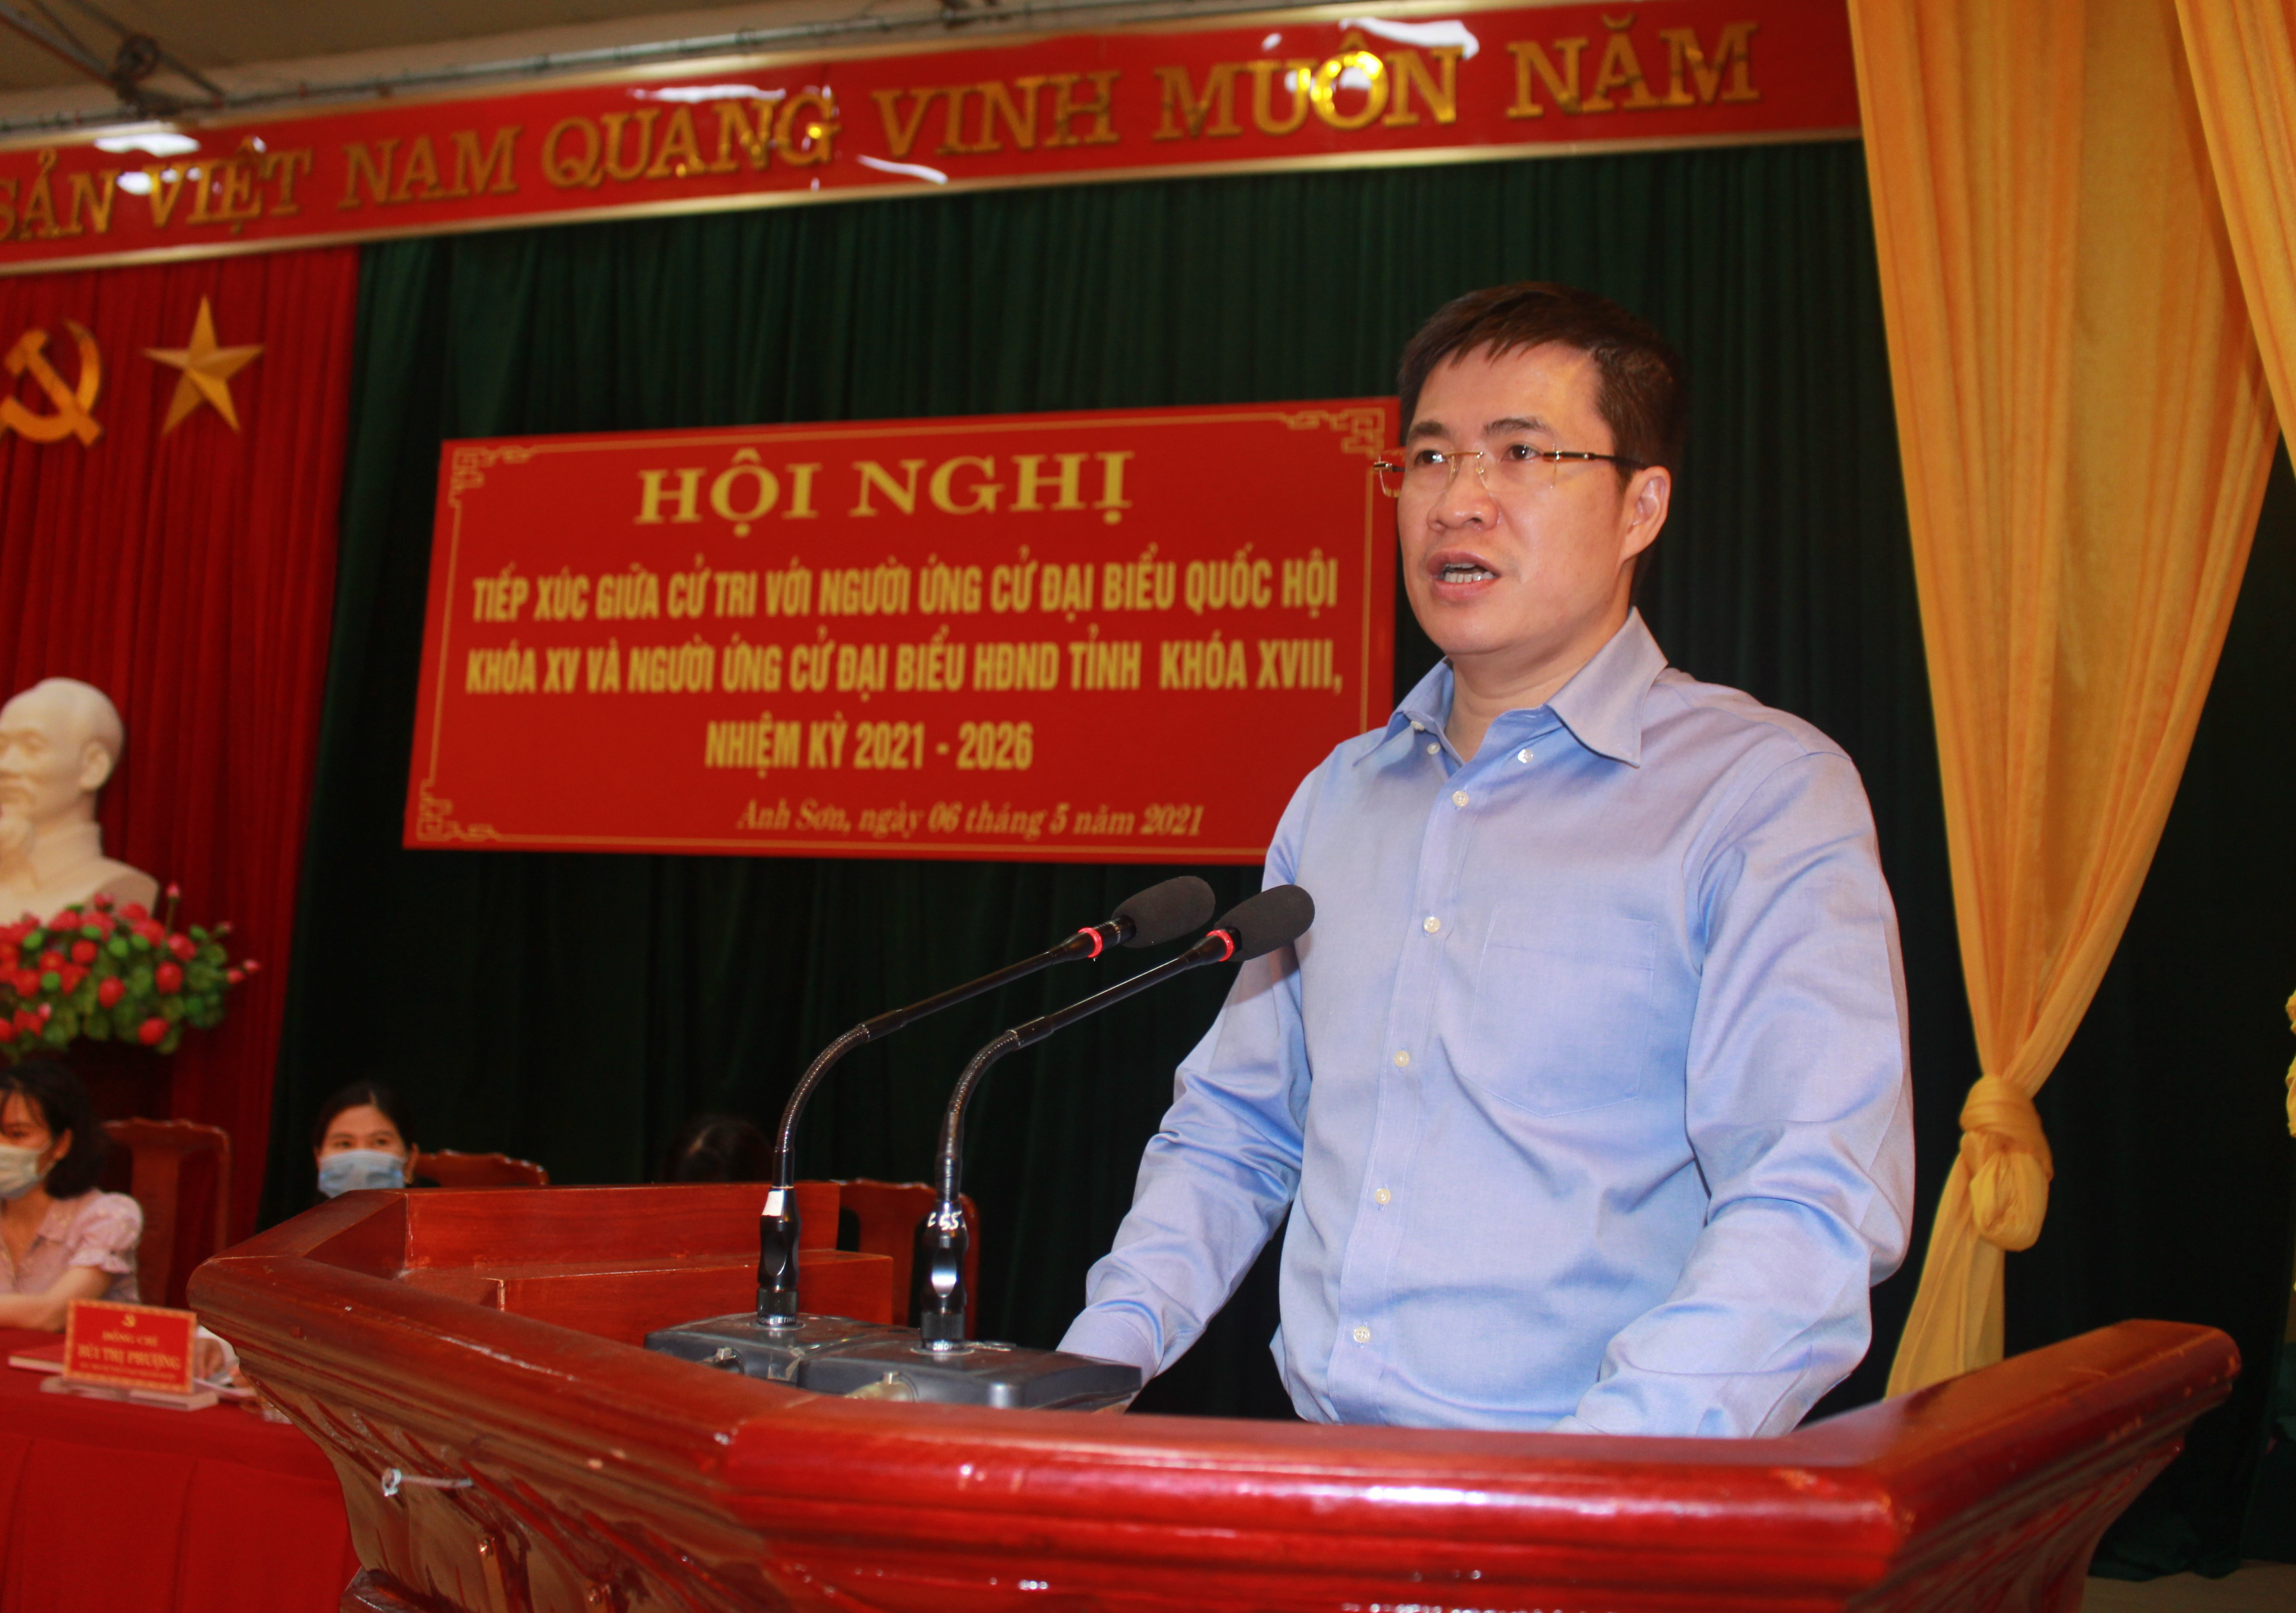 Ông Hoàng Minh Hiếu - Ủy viên Ban Thư ký Quốc hội, Vụ trưởng Vụ thông tin phát biểu tại cuộc tiếp xúc cử tri. Ảnh Thái Hiền